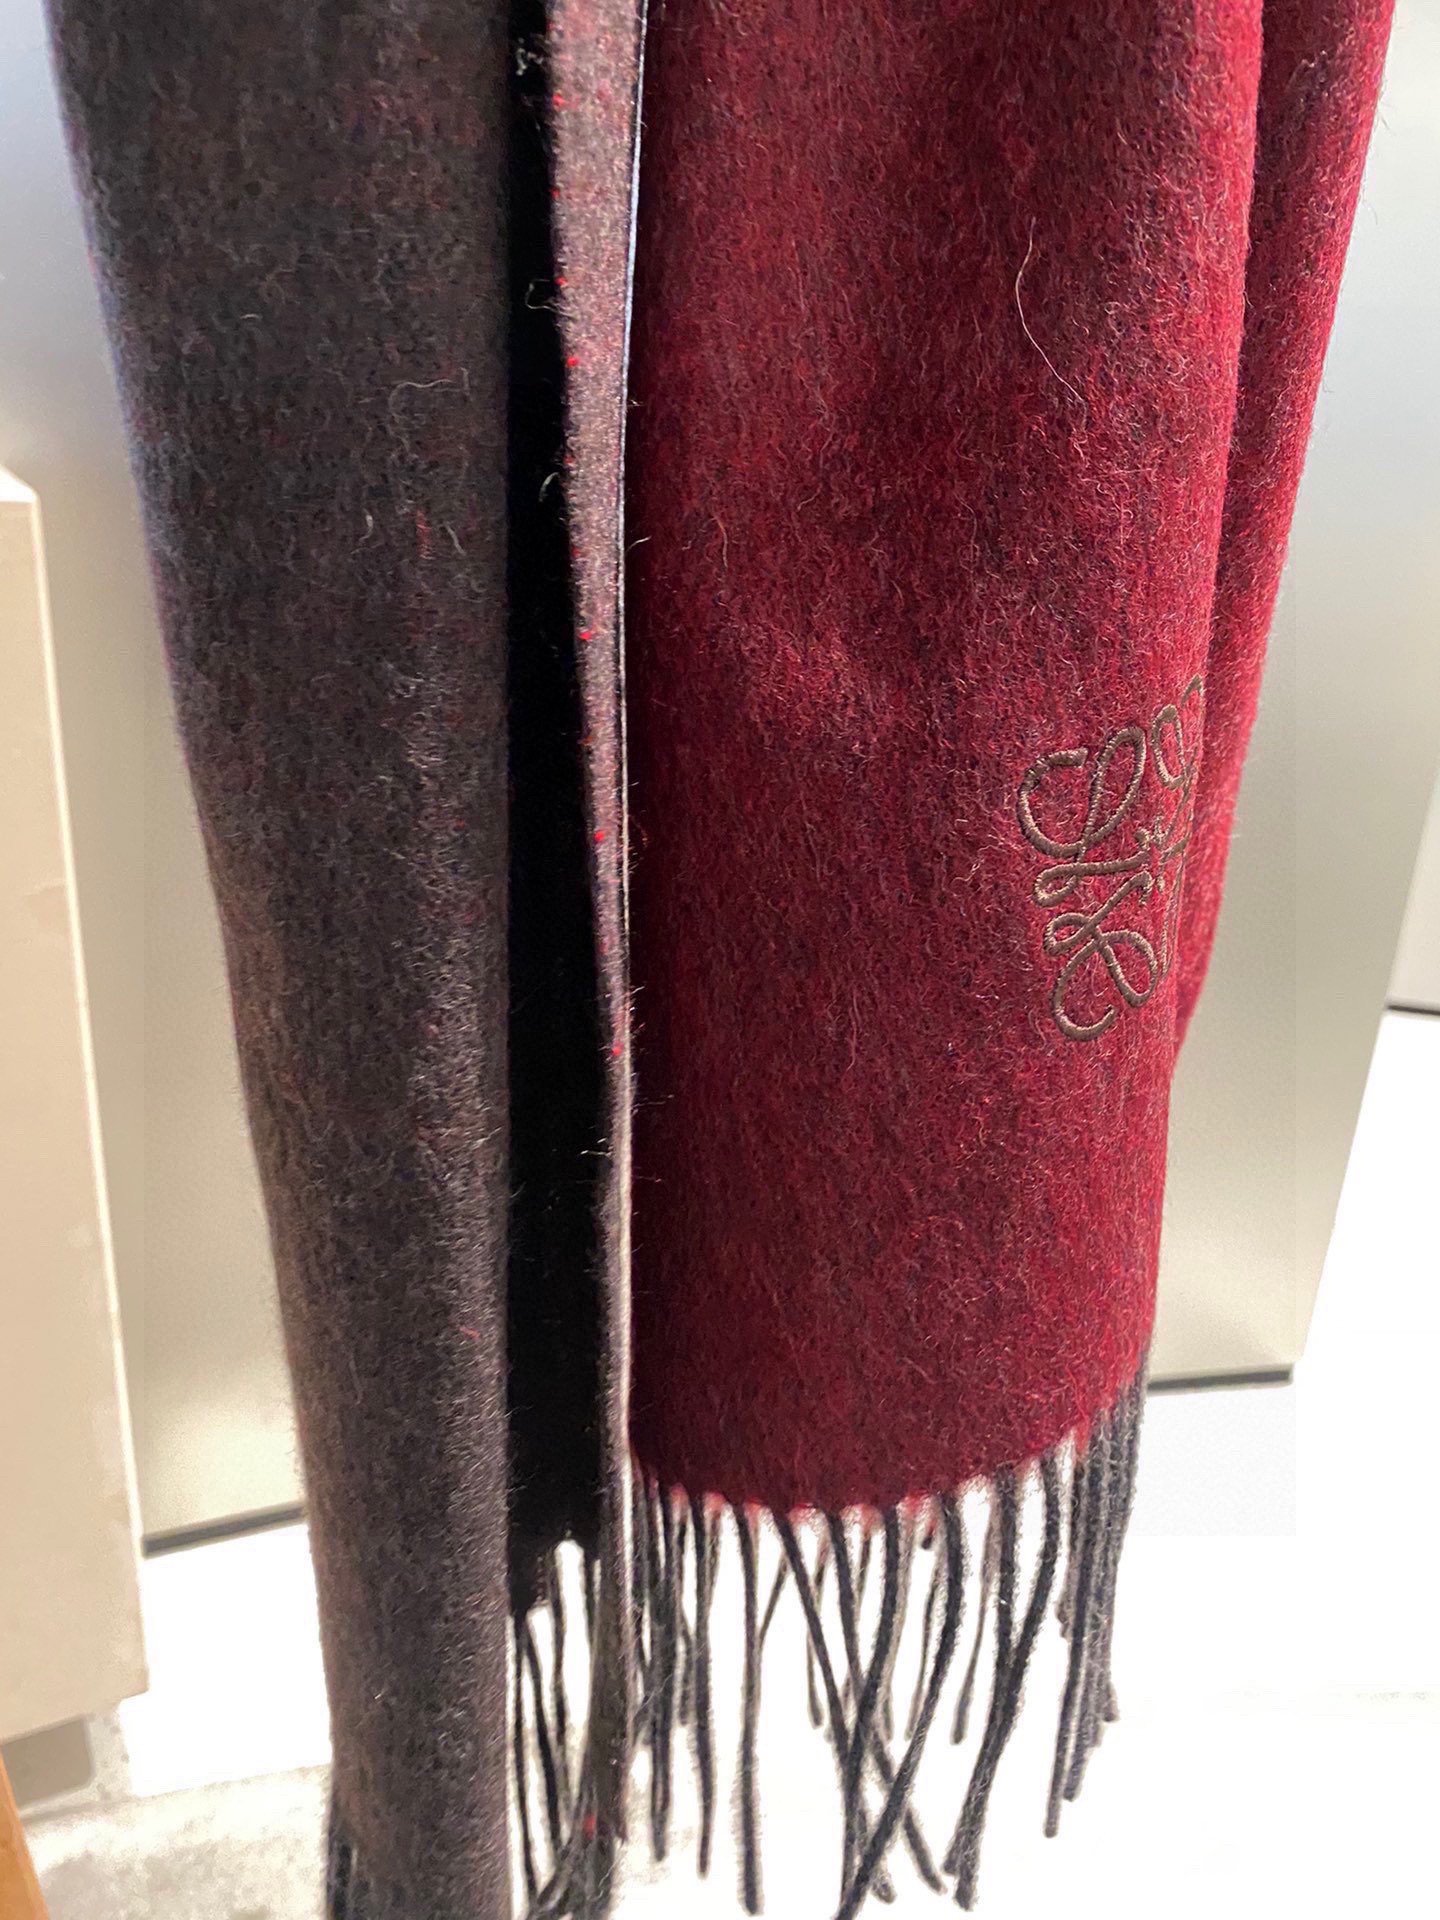 罗意威2021渐变色巴黎时装展商务男士女士通用双面羊绒披肩代工厂臻选上乘的超细羊绒纤维进行纯手工精梳处理